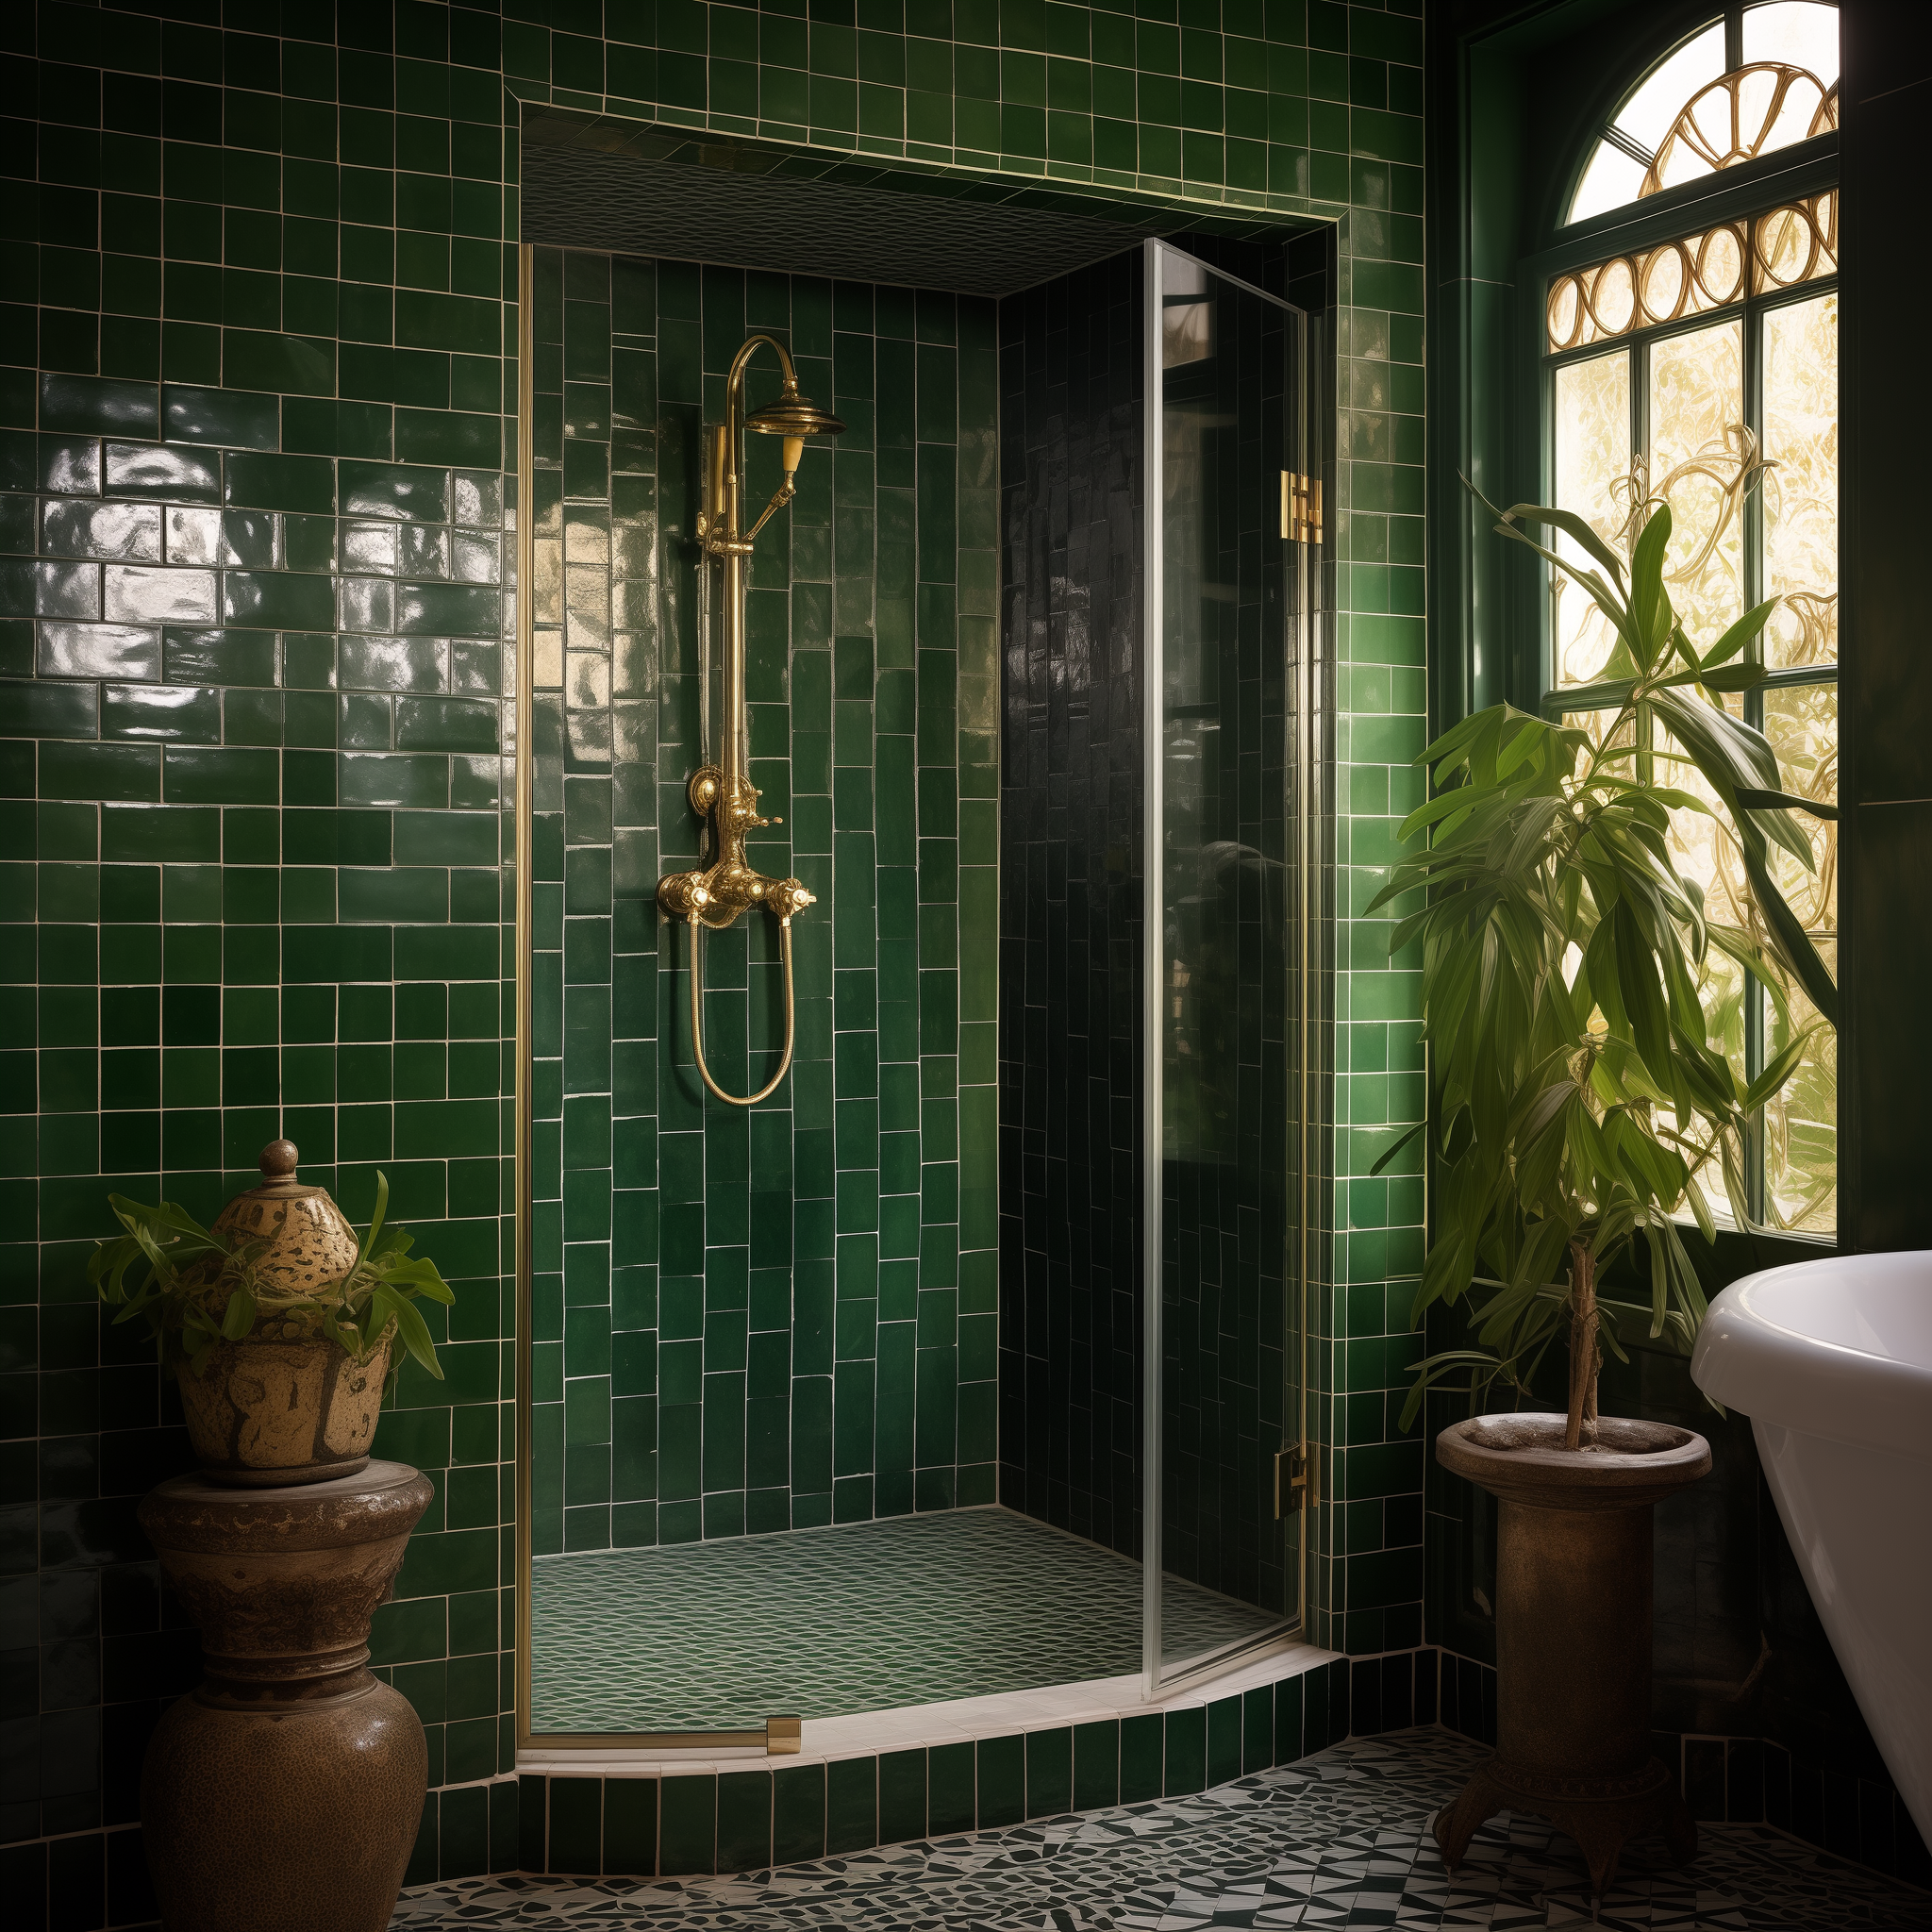 green moroccan bathroom ideas decor style design inspired interior architecture theme